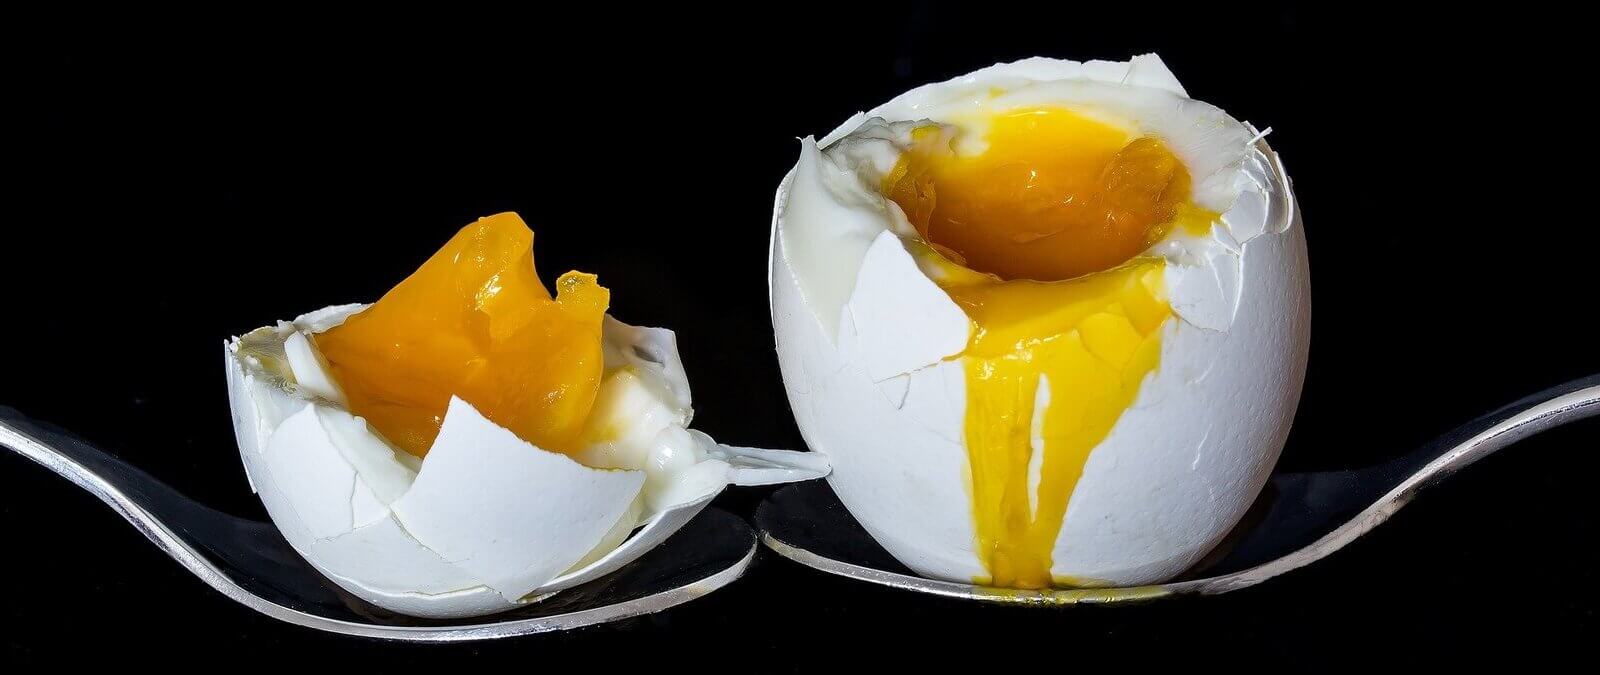 Cocer huevos con sal y vinagre, patatas blandas y depilarse las zonas  íntimas: llega a Maldita Ciencia el consultorio 124º ·  -  Periodismo para que no te la cuelen